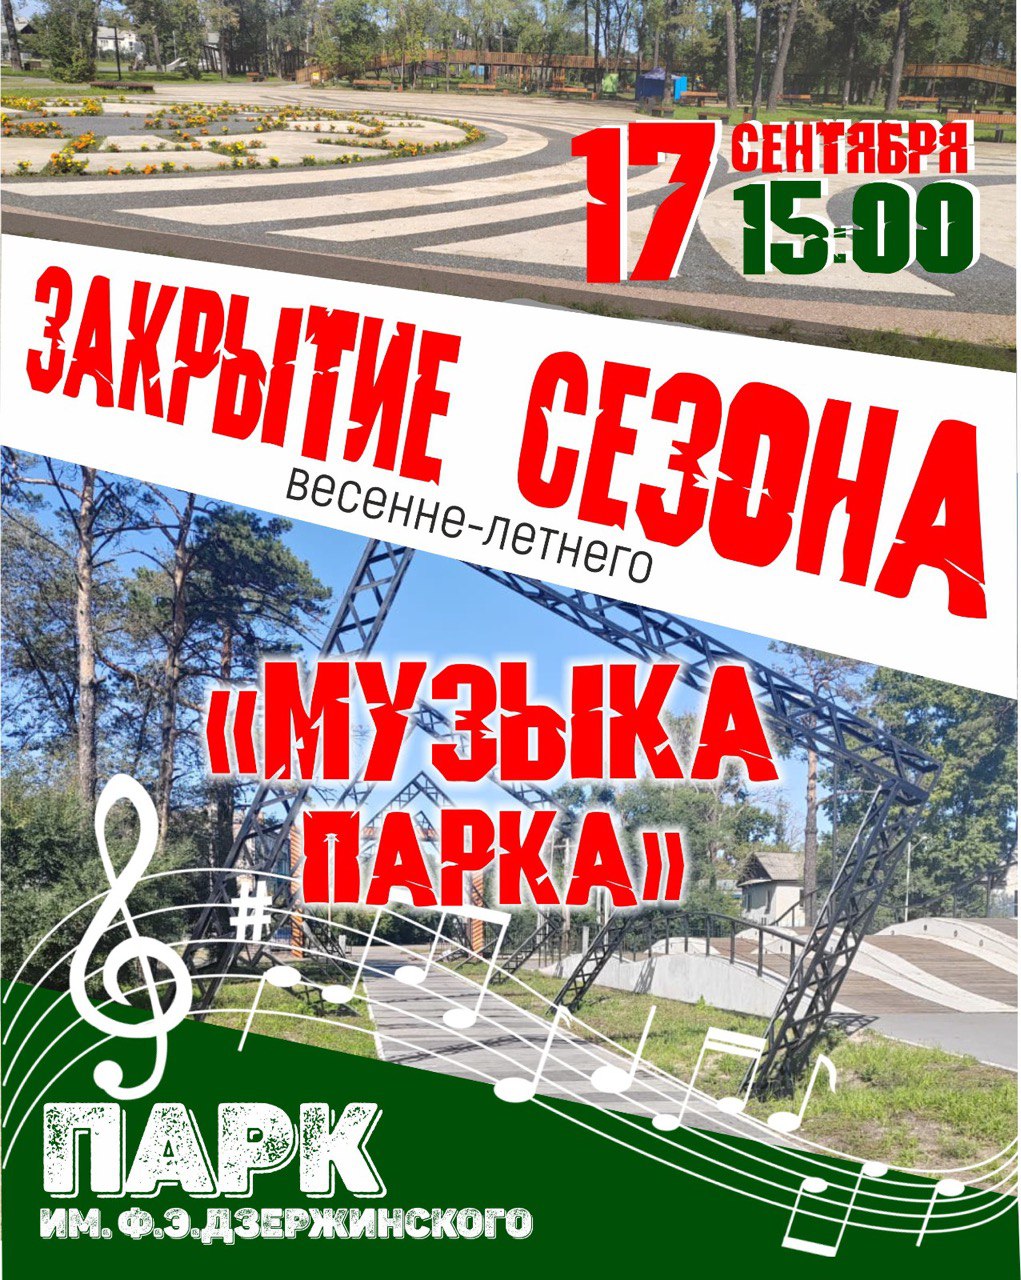 Закрытие весенне-летнего сезона в парке им. Дзержинского